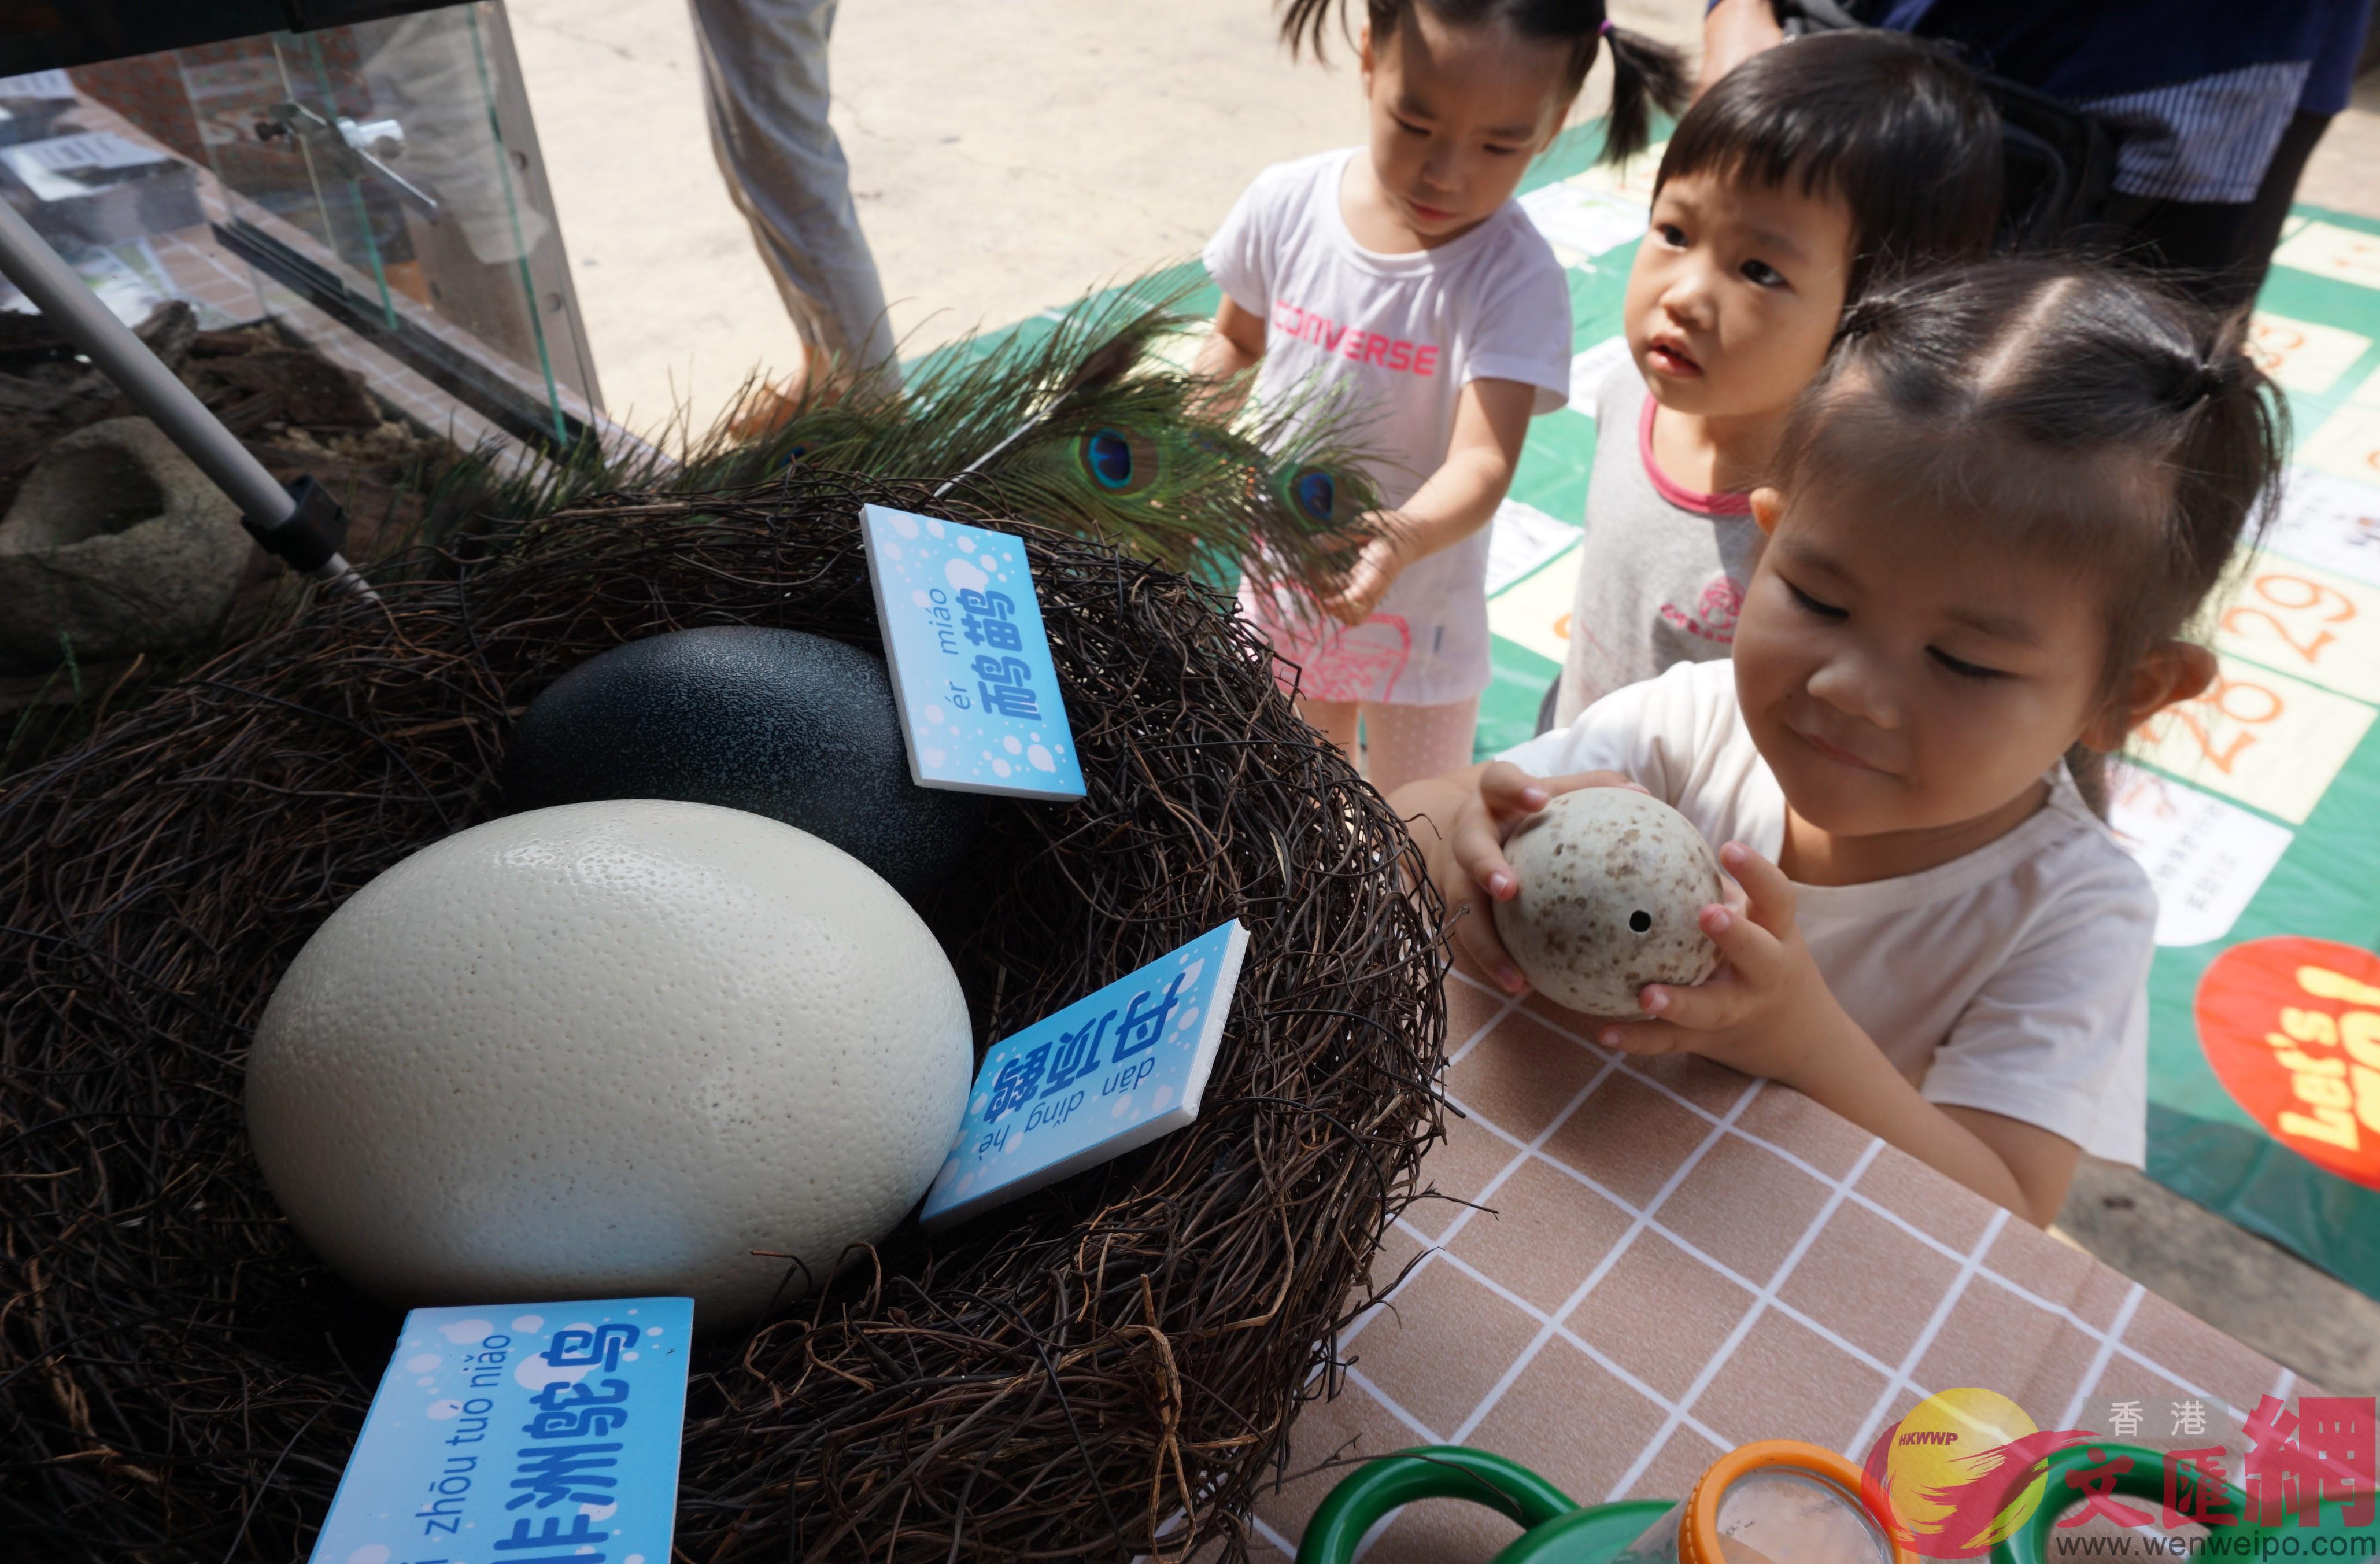 各式鳥蛋吸引了小朋友的好奇]記者 郭若溪 攝^